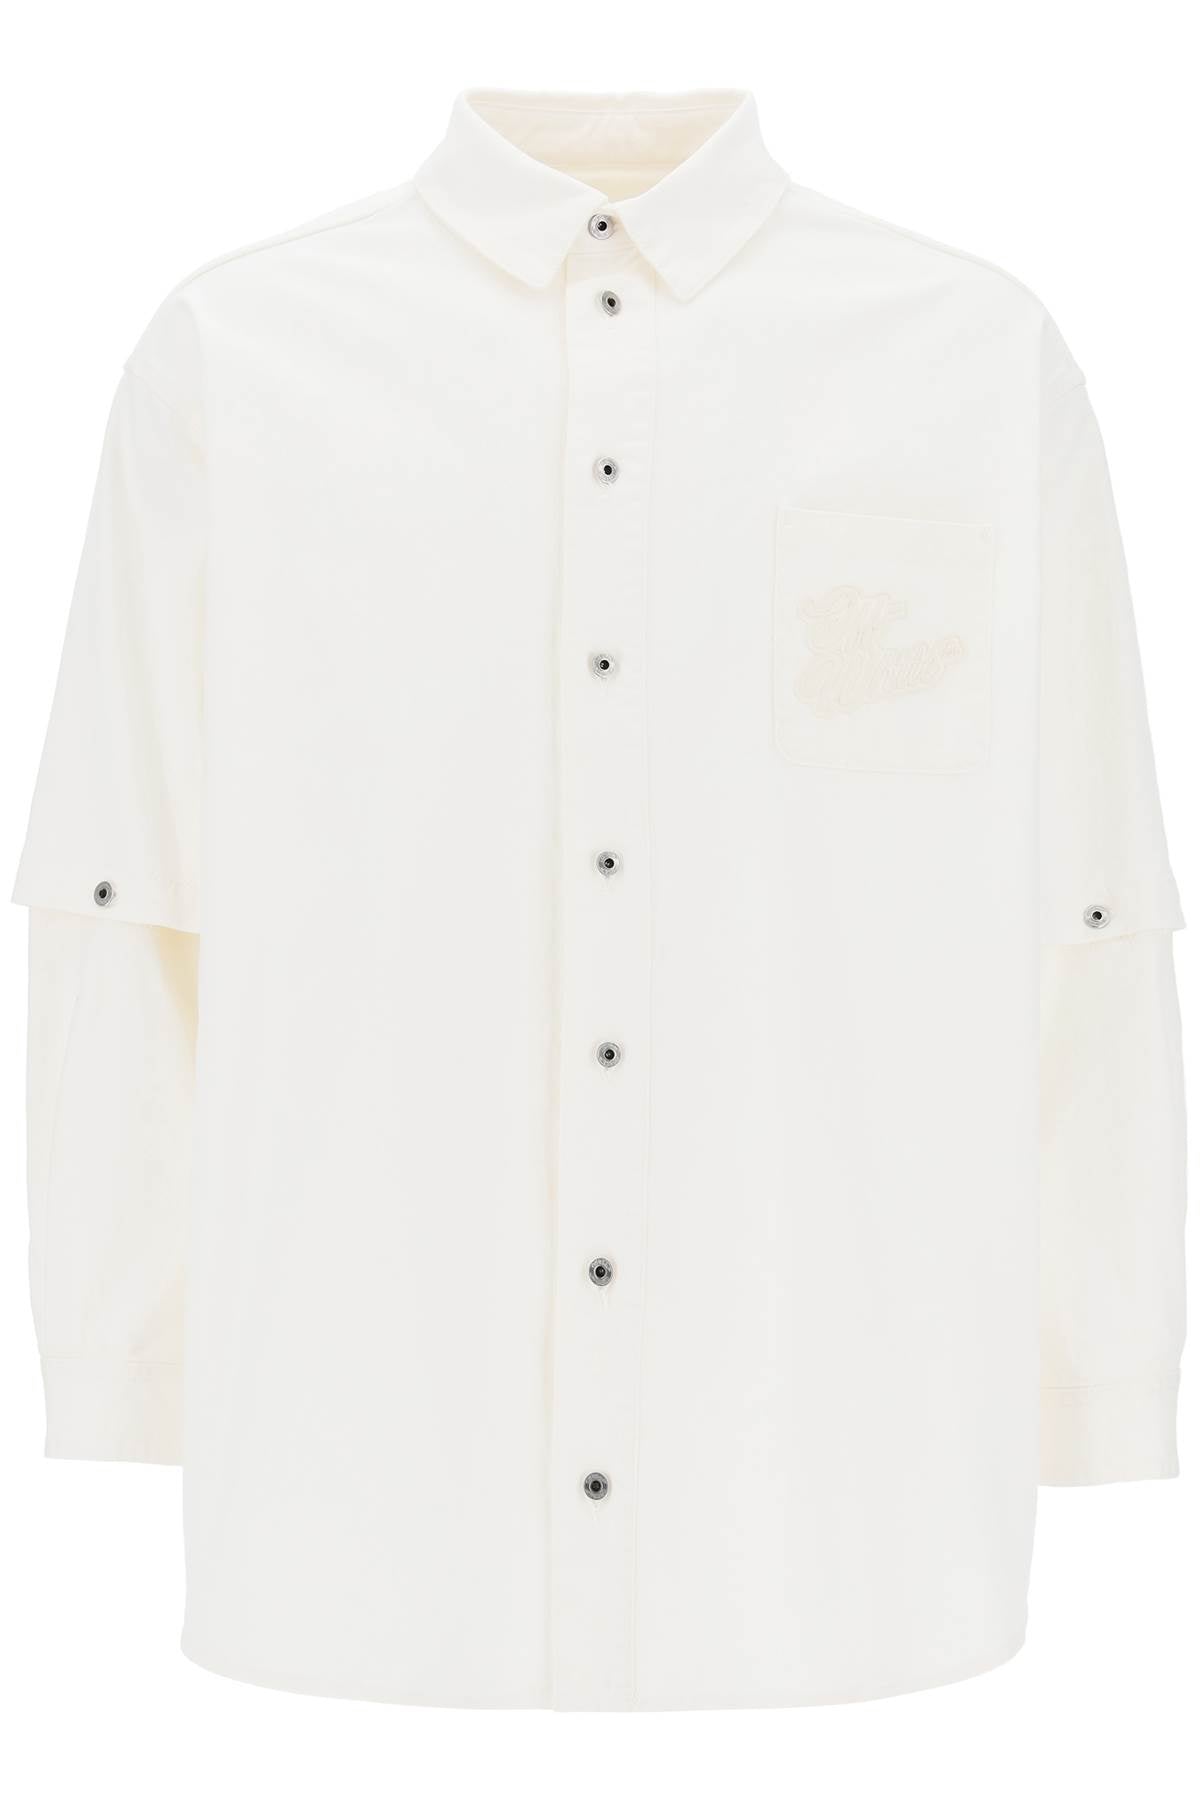 Áo khoác Overshirt logo thập niên 90 chất liệu vải cotton màu trắng dành cho nam giới - SS24